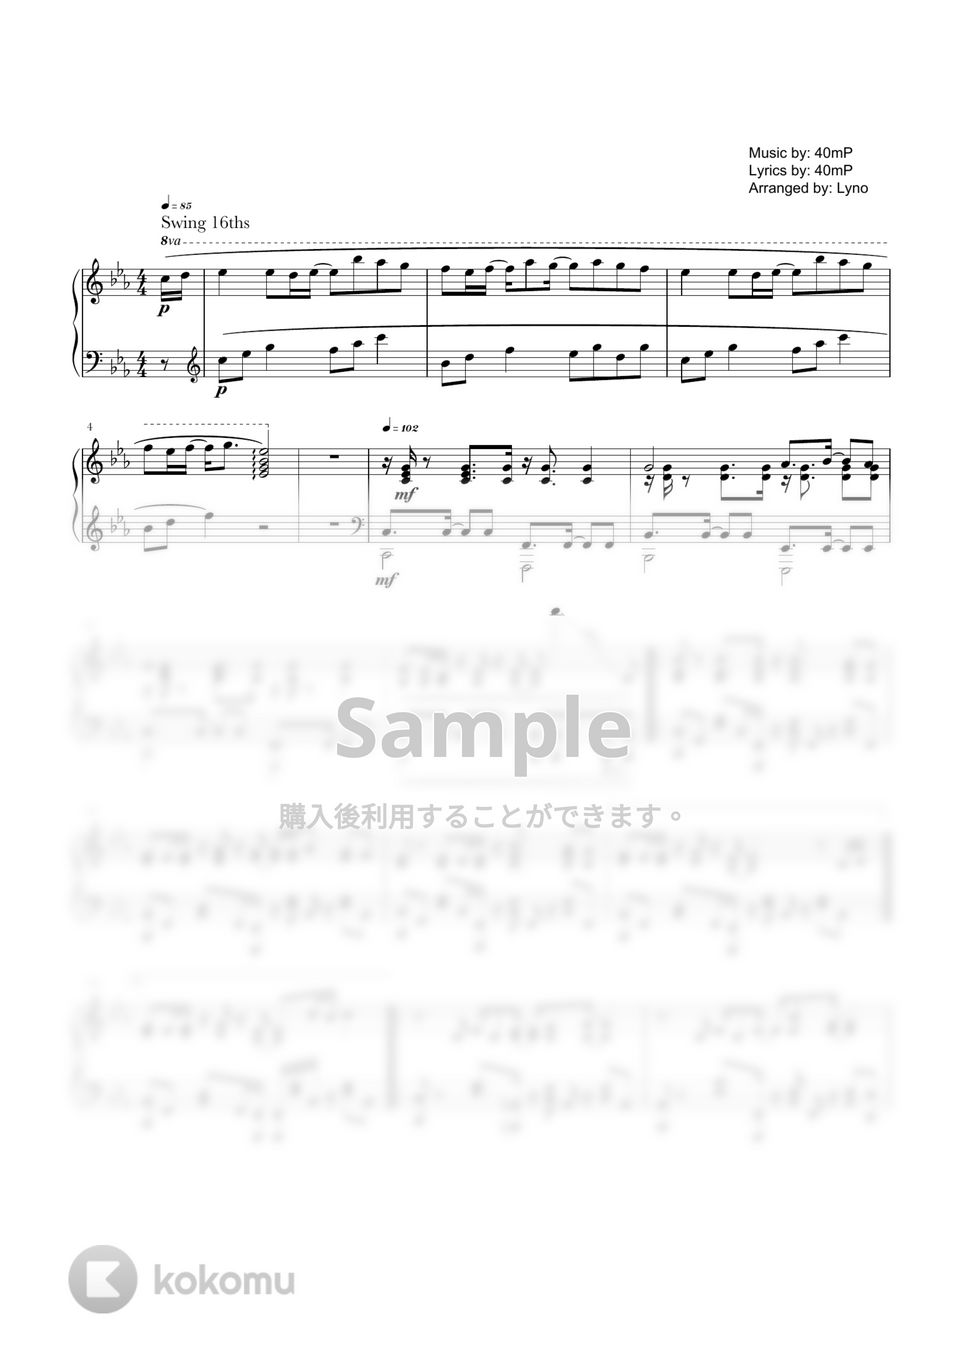 40mp - からくりピエロ (ピアノソロ上級) by Ray